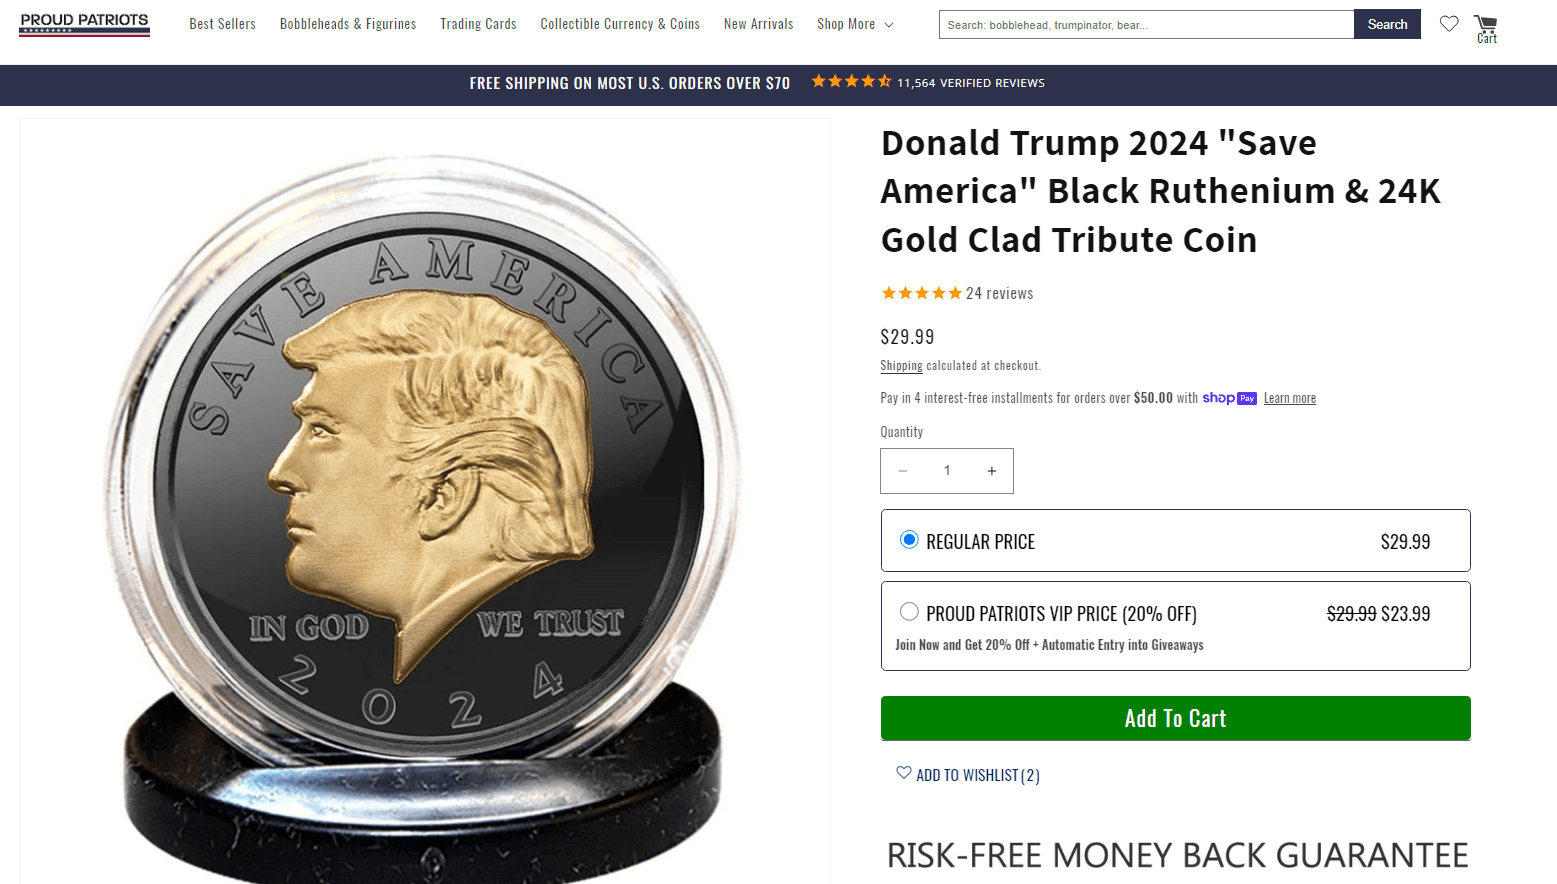 Trump 2024 Black Ruthenium Coin